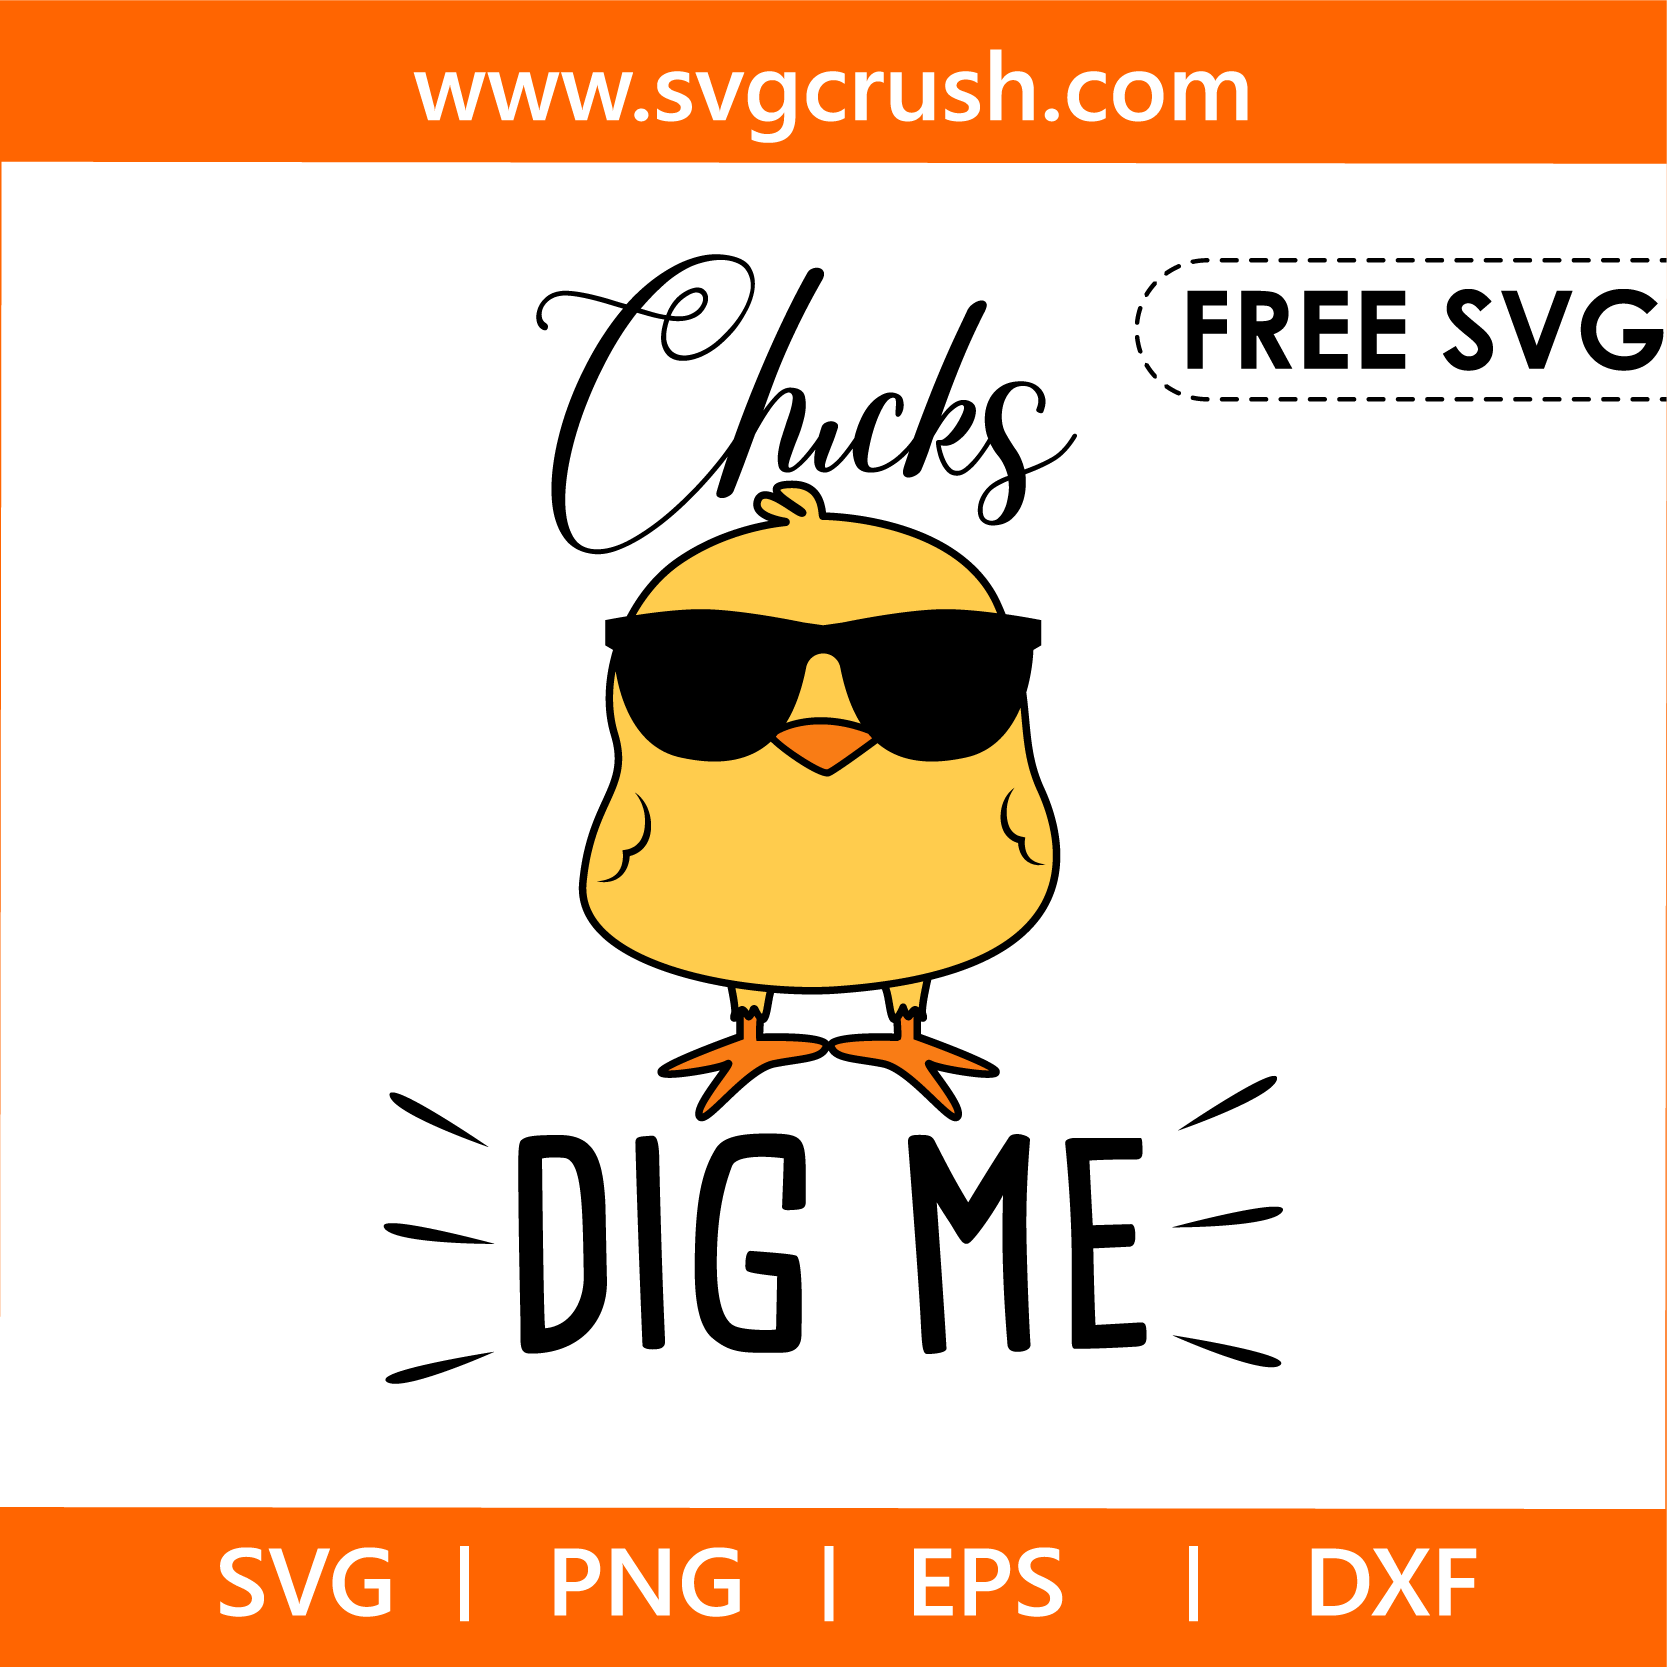 free chicks-dig-me-005 svg